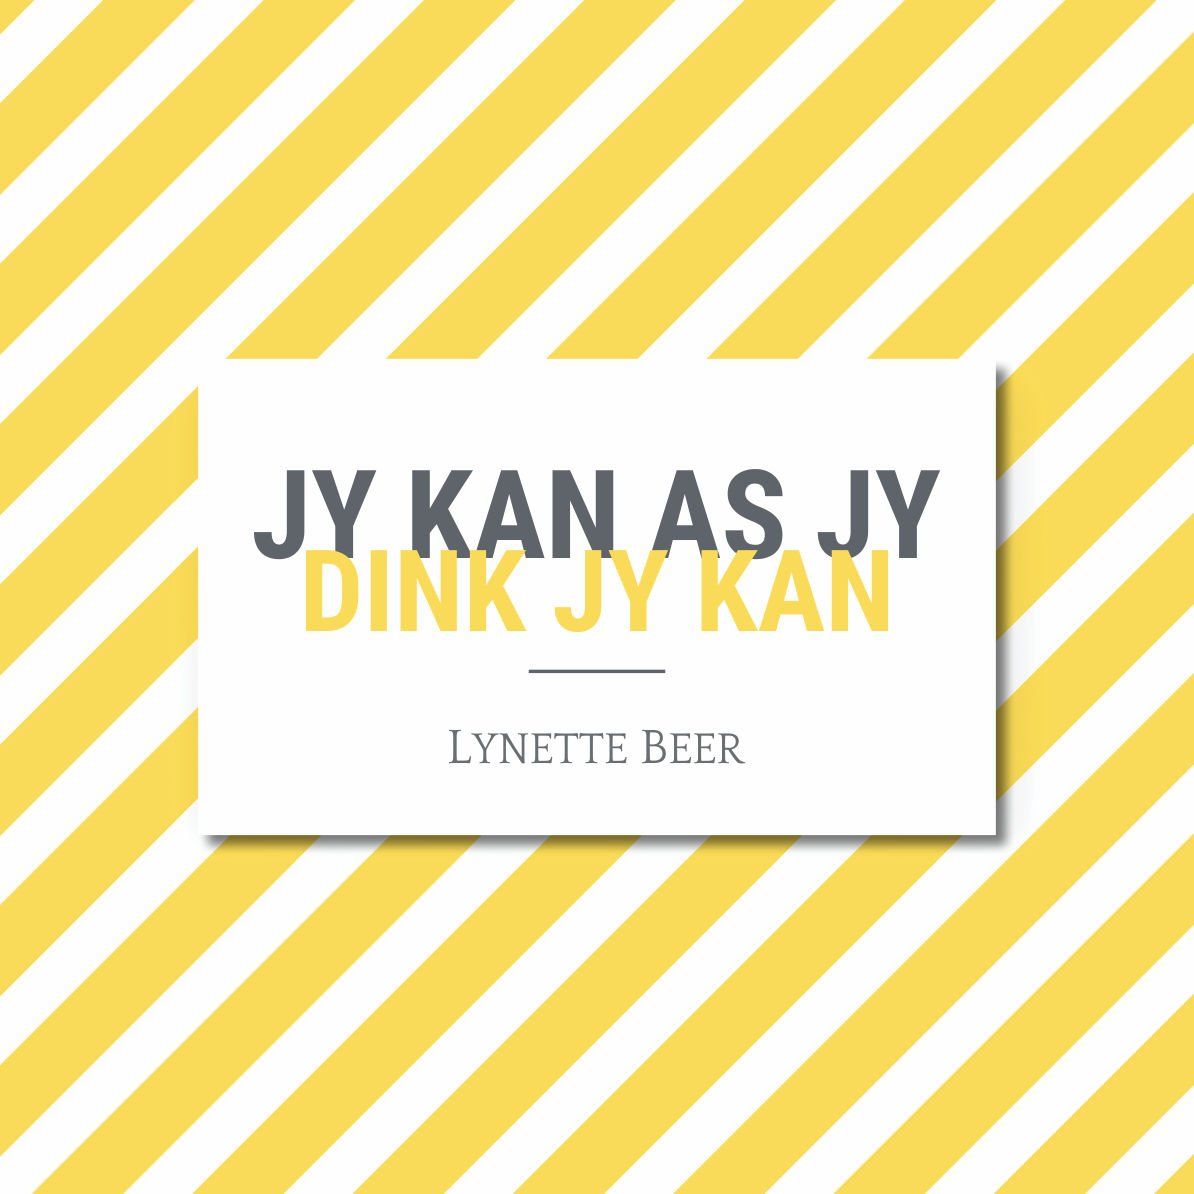 Jy kan as jy dink jy kan! | Lynette Beer